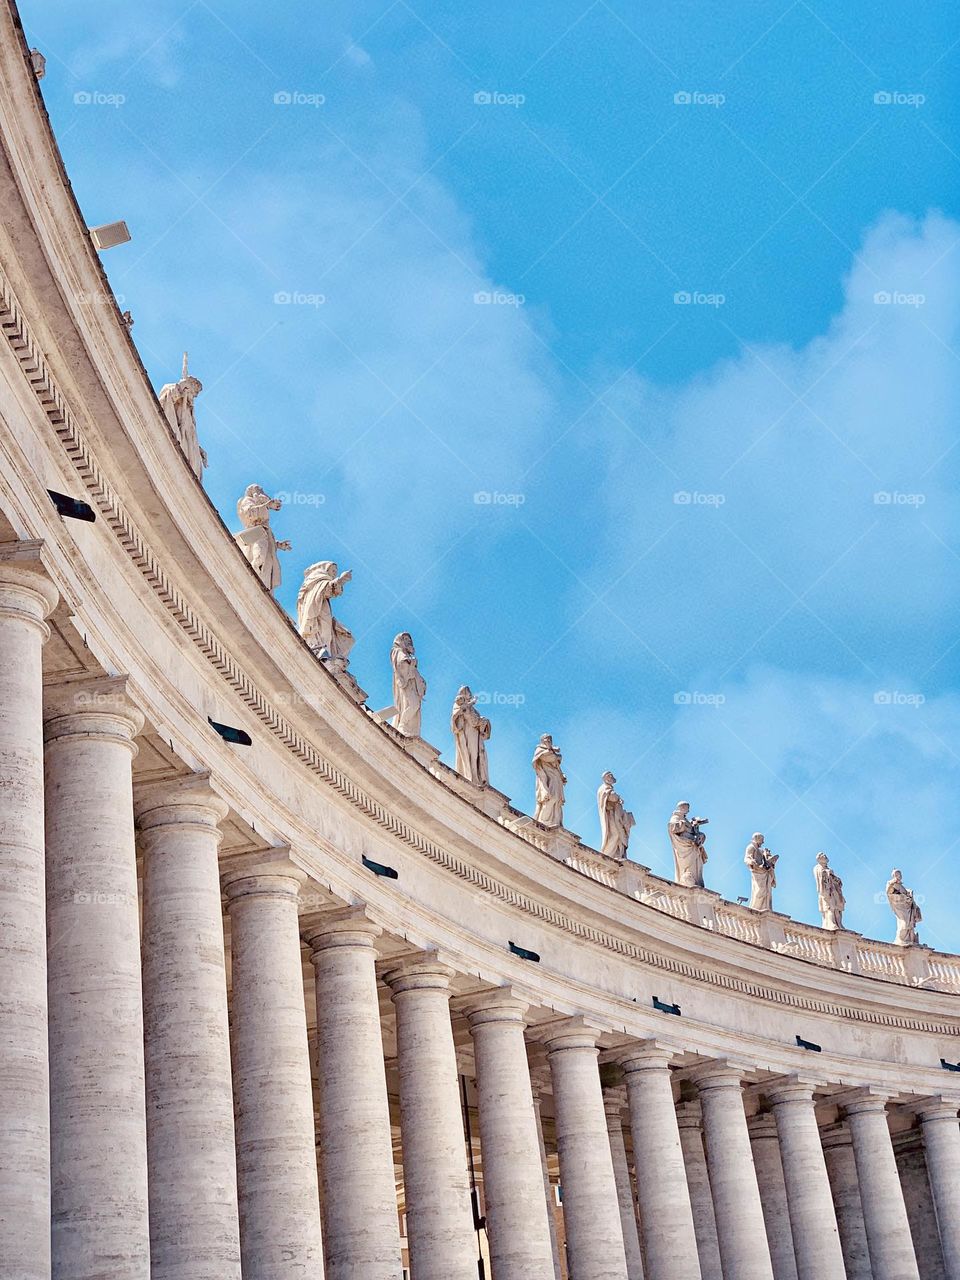 Vatican statues